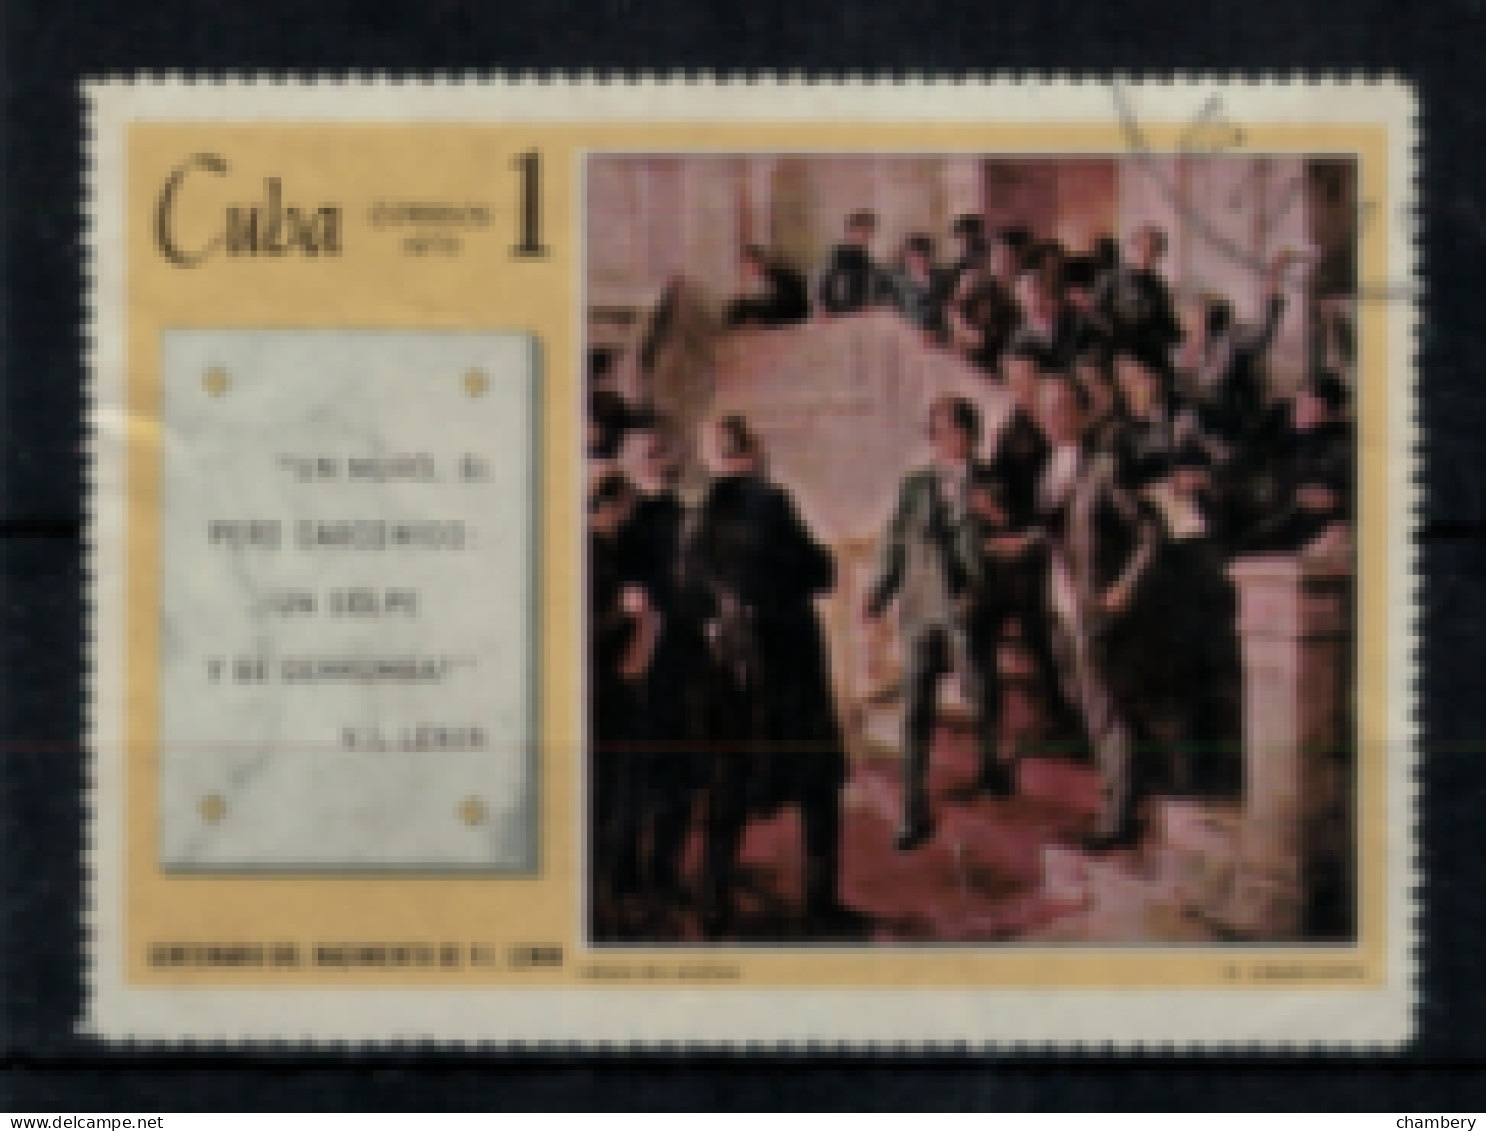 Cuba - "Centenaire De La Naissance De Lénine "Lénine à Kazan" - Oblitéré N° 1309 De 1970 - Used Stamps